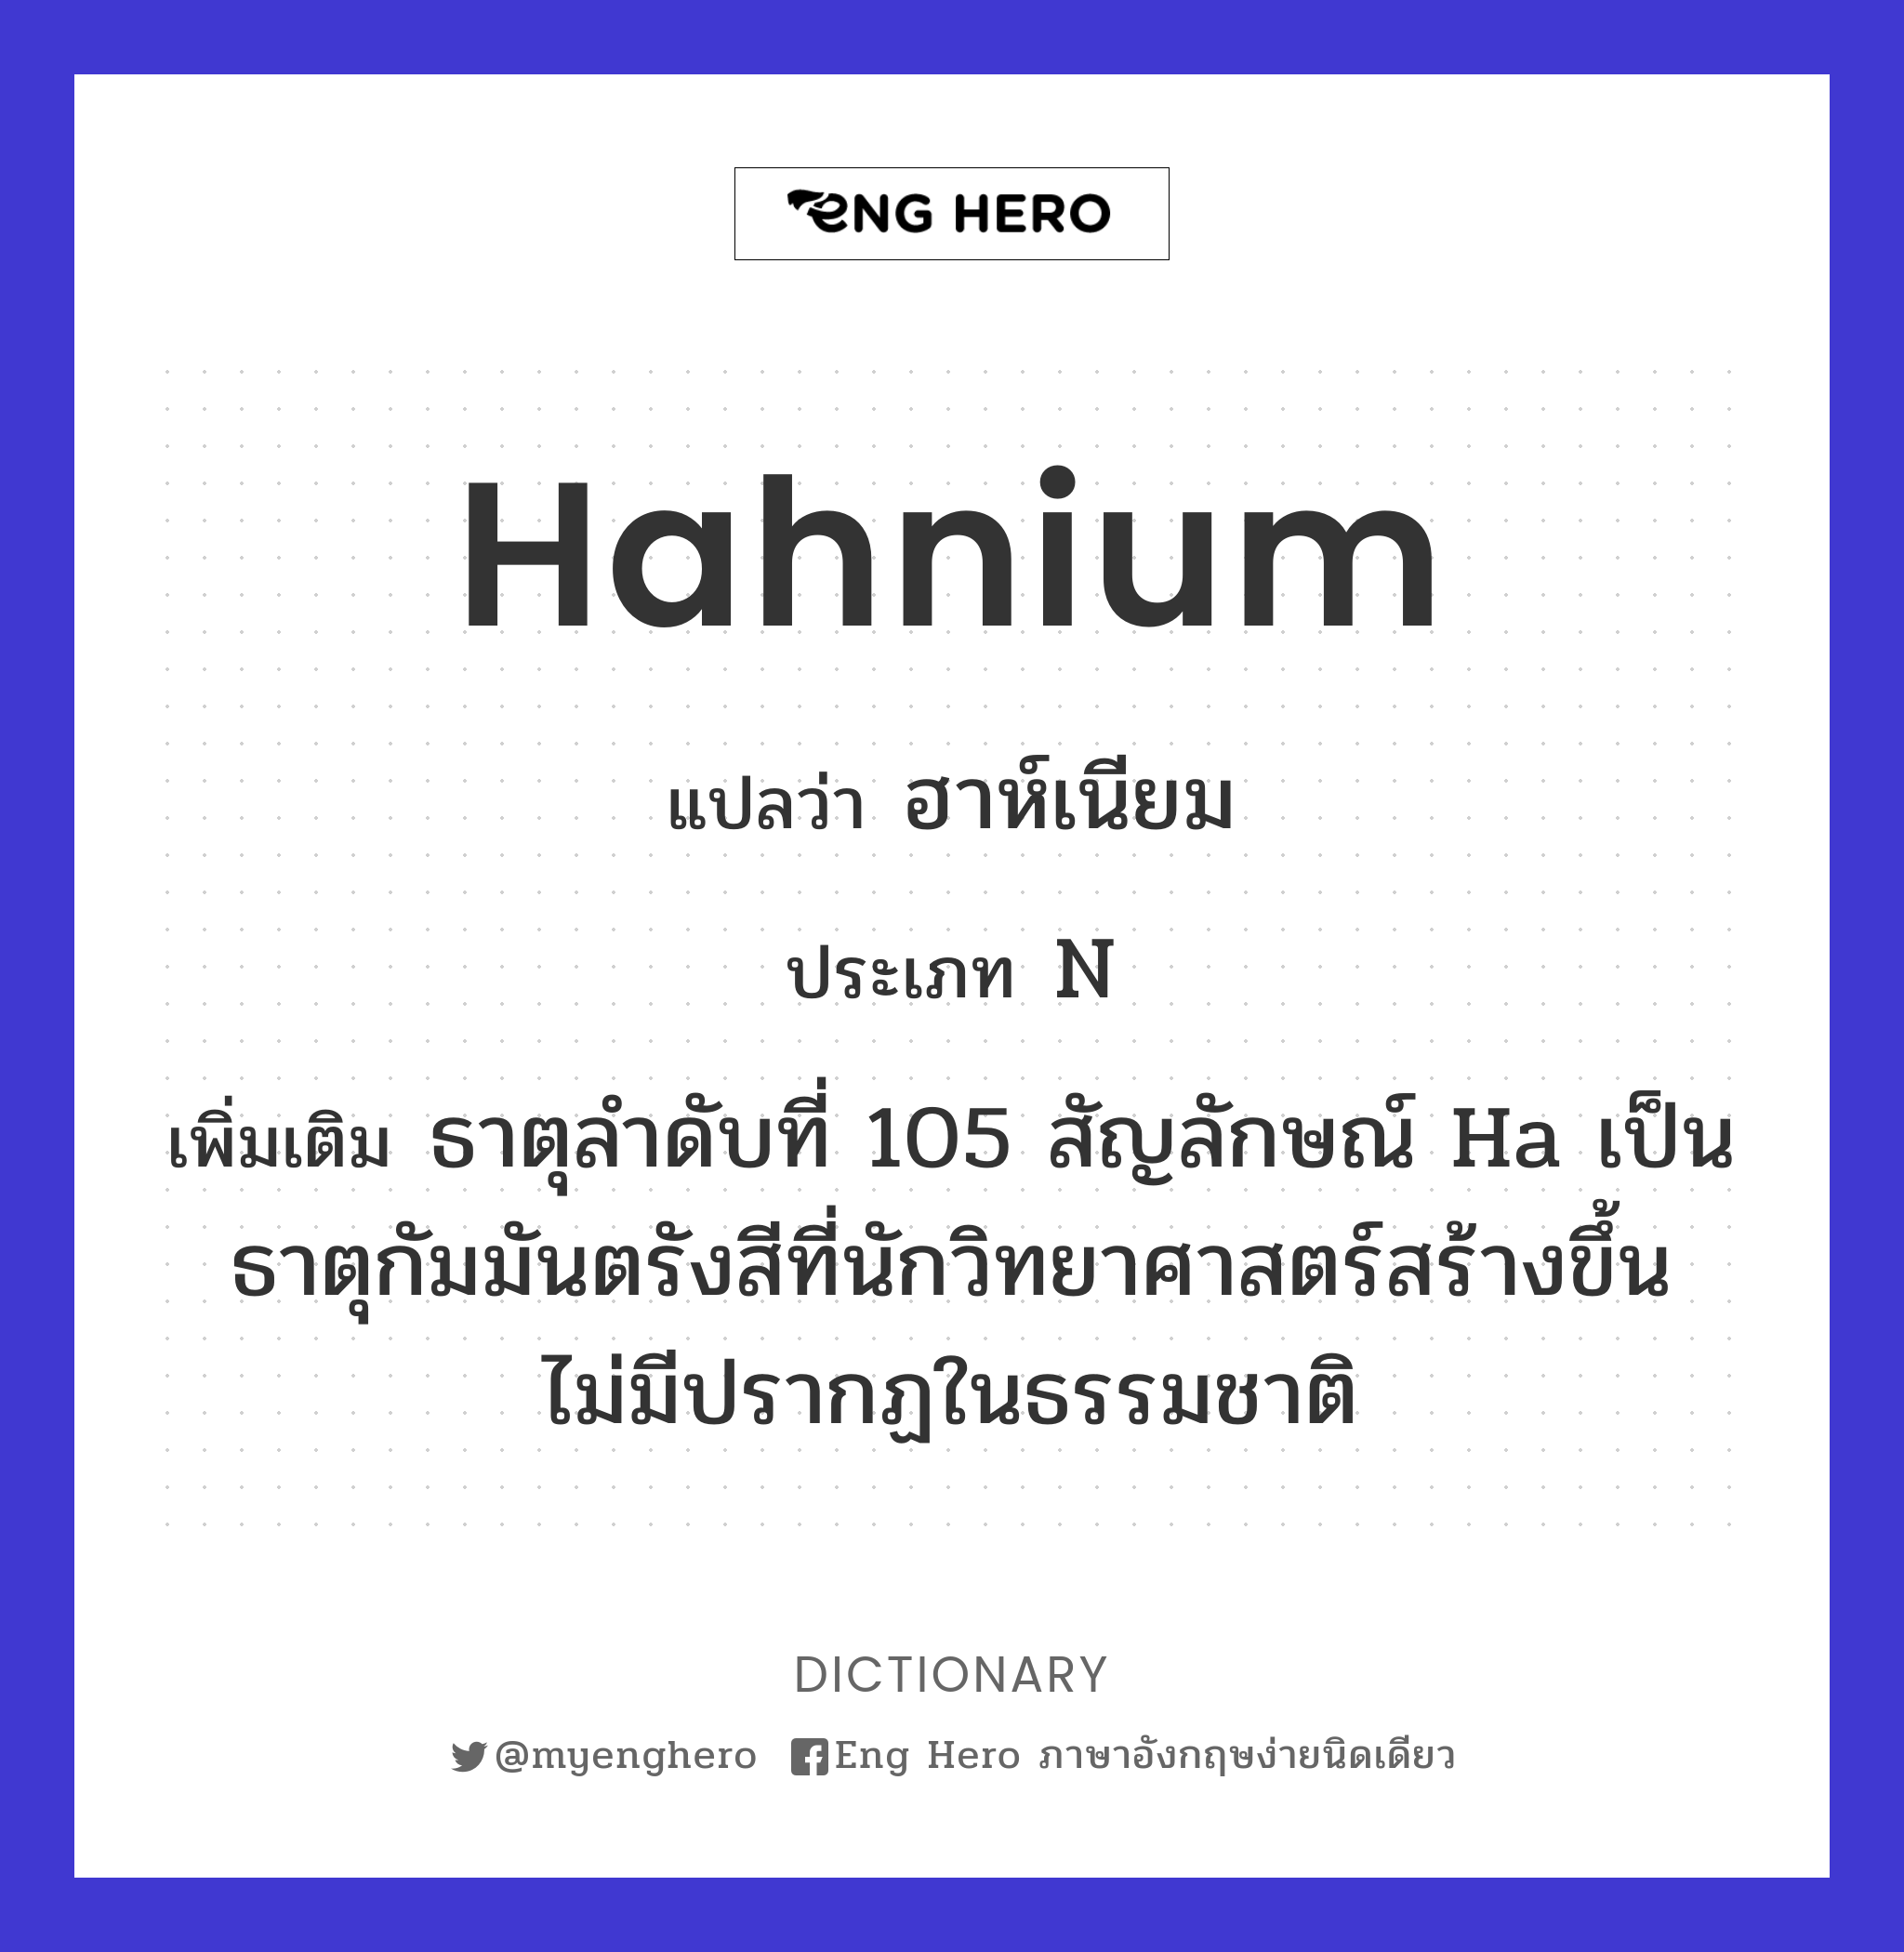 hahnium